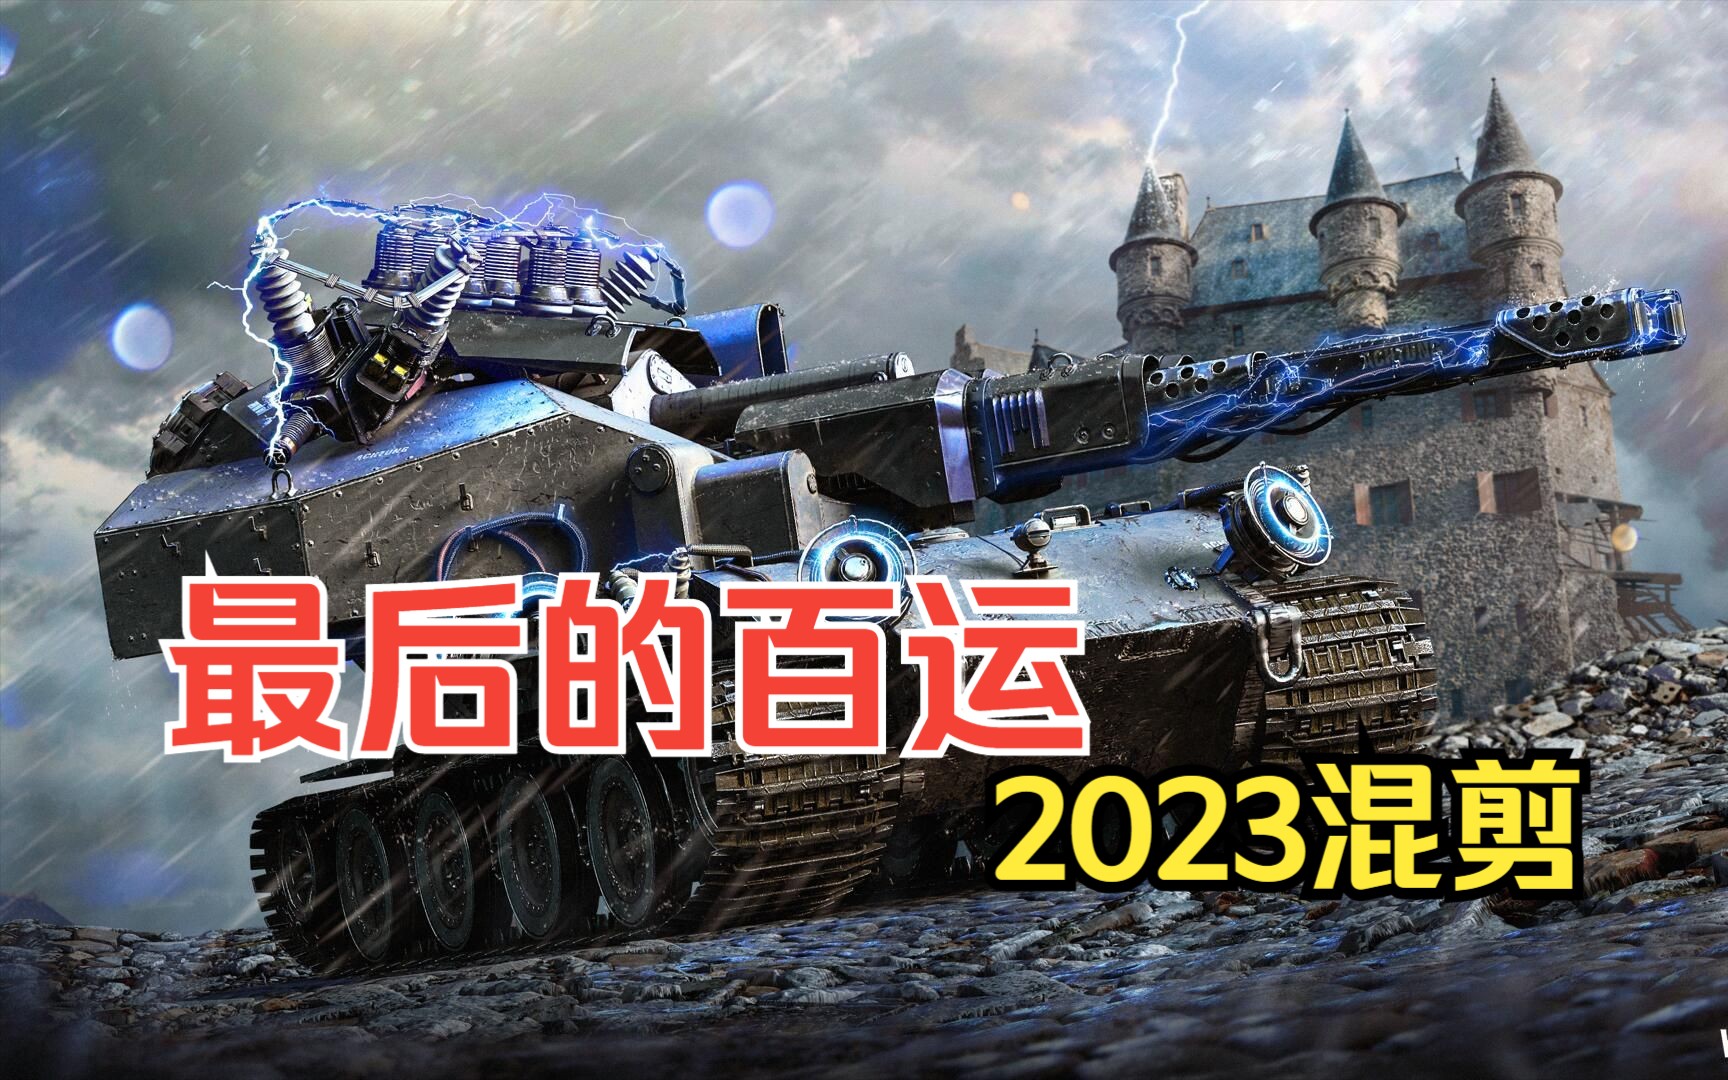 【坦克世界】感受电磁炮大百运的威力吧！2023年最终兵器活动BGM混剪